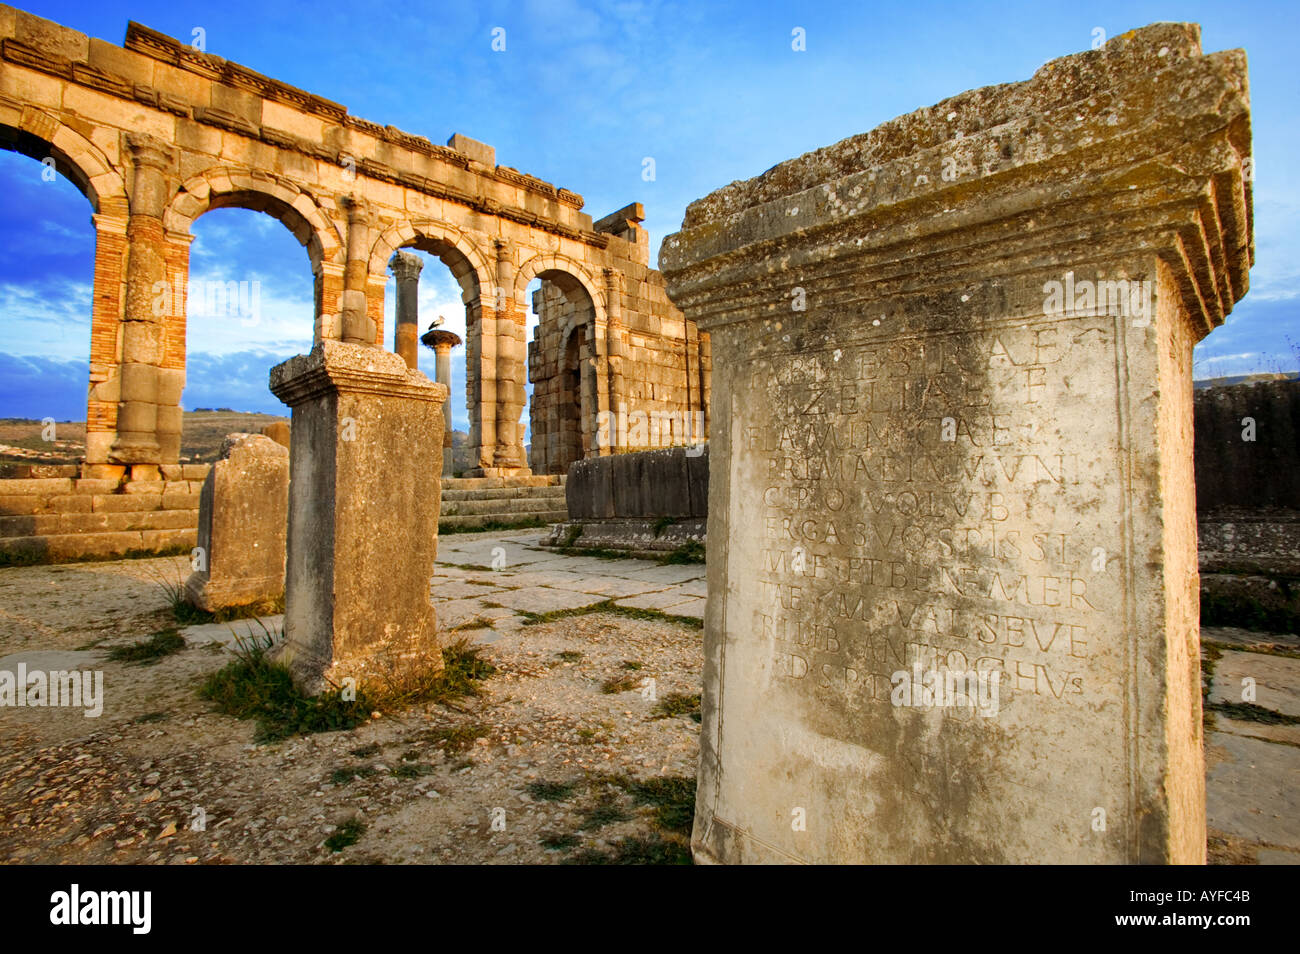 Altertümer Volubilis Roman Ruinen stammt aus der 2. und 3. Jahrhundert n. Chr. lateinische Inschrift auf alten Marokko Säulen Stockfoto